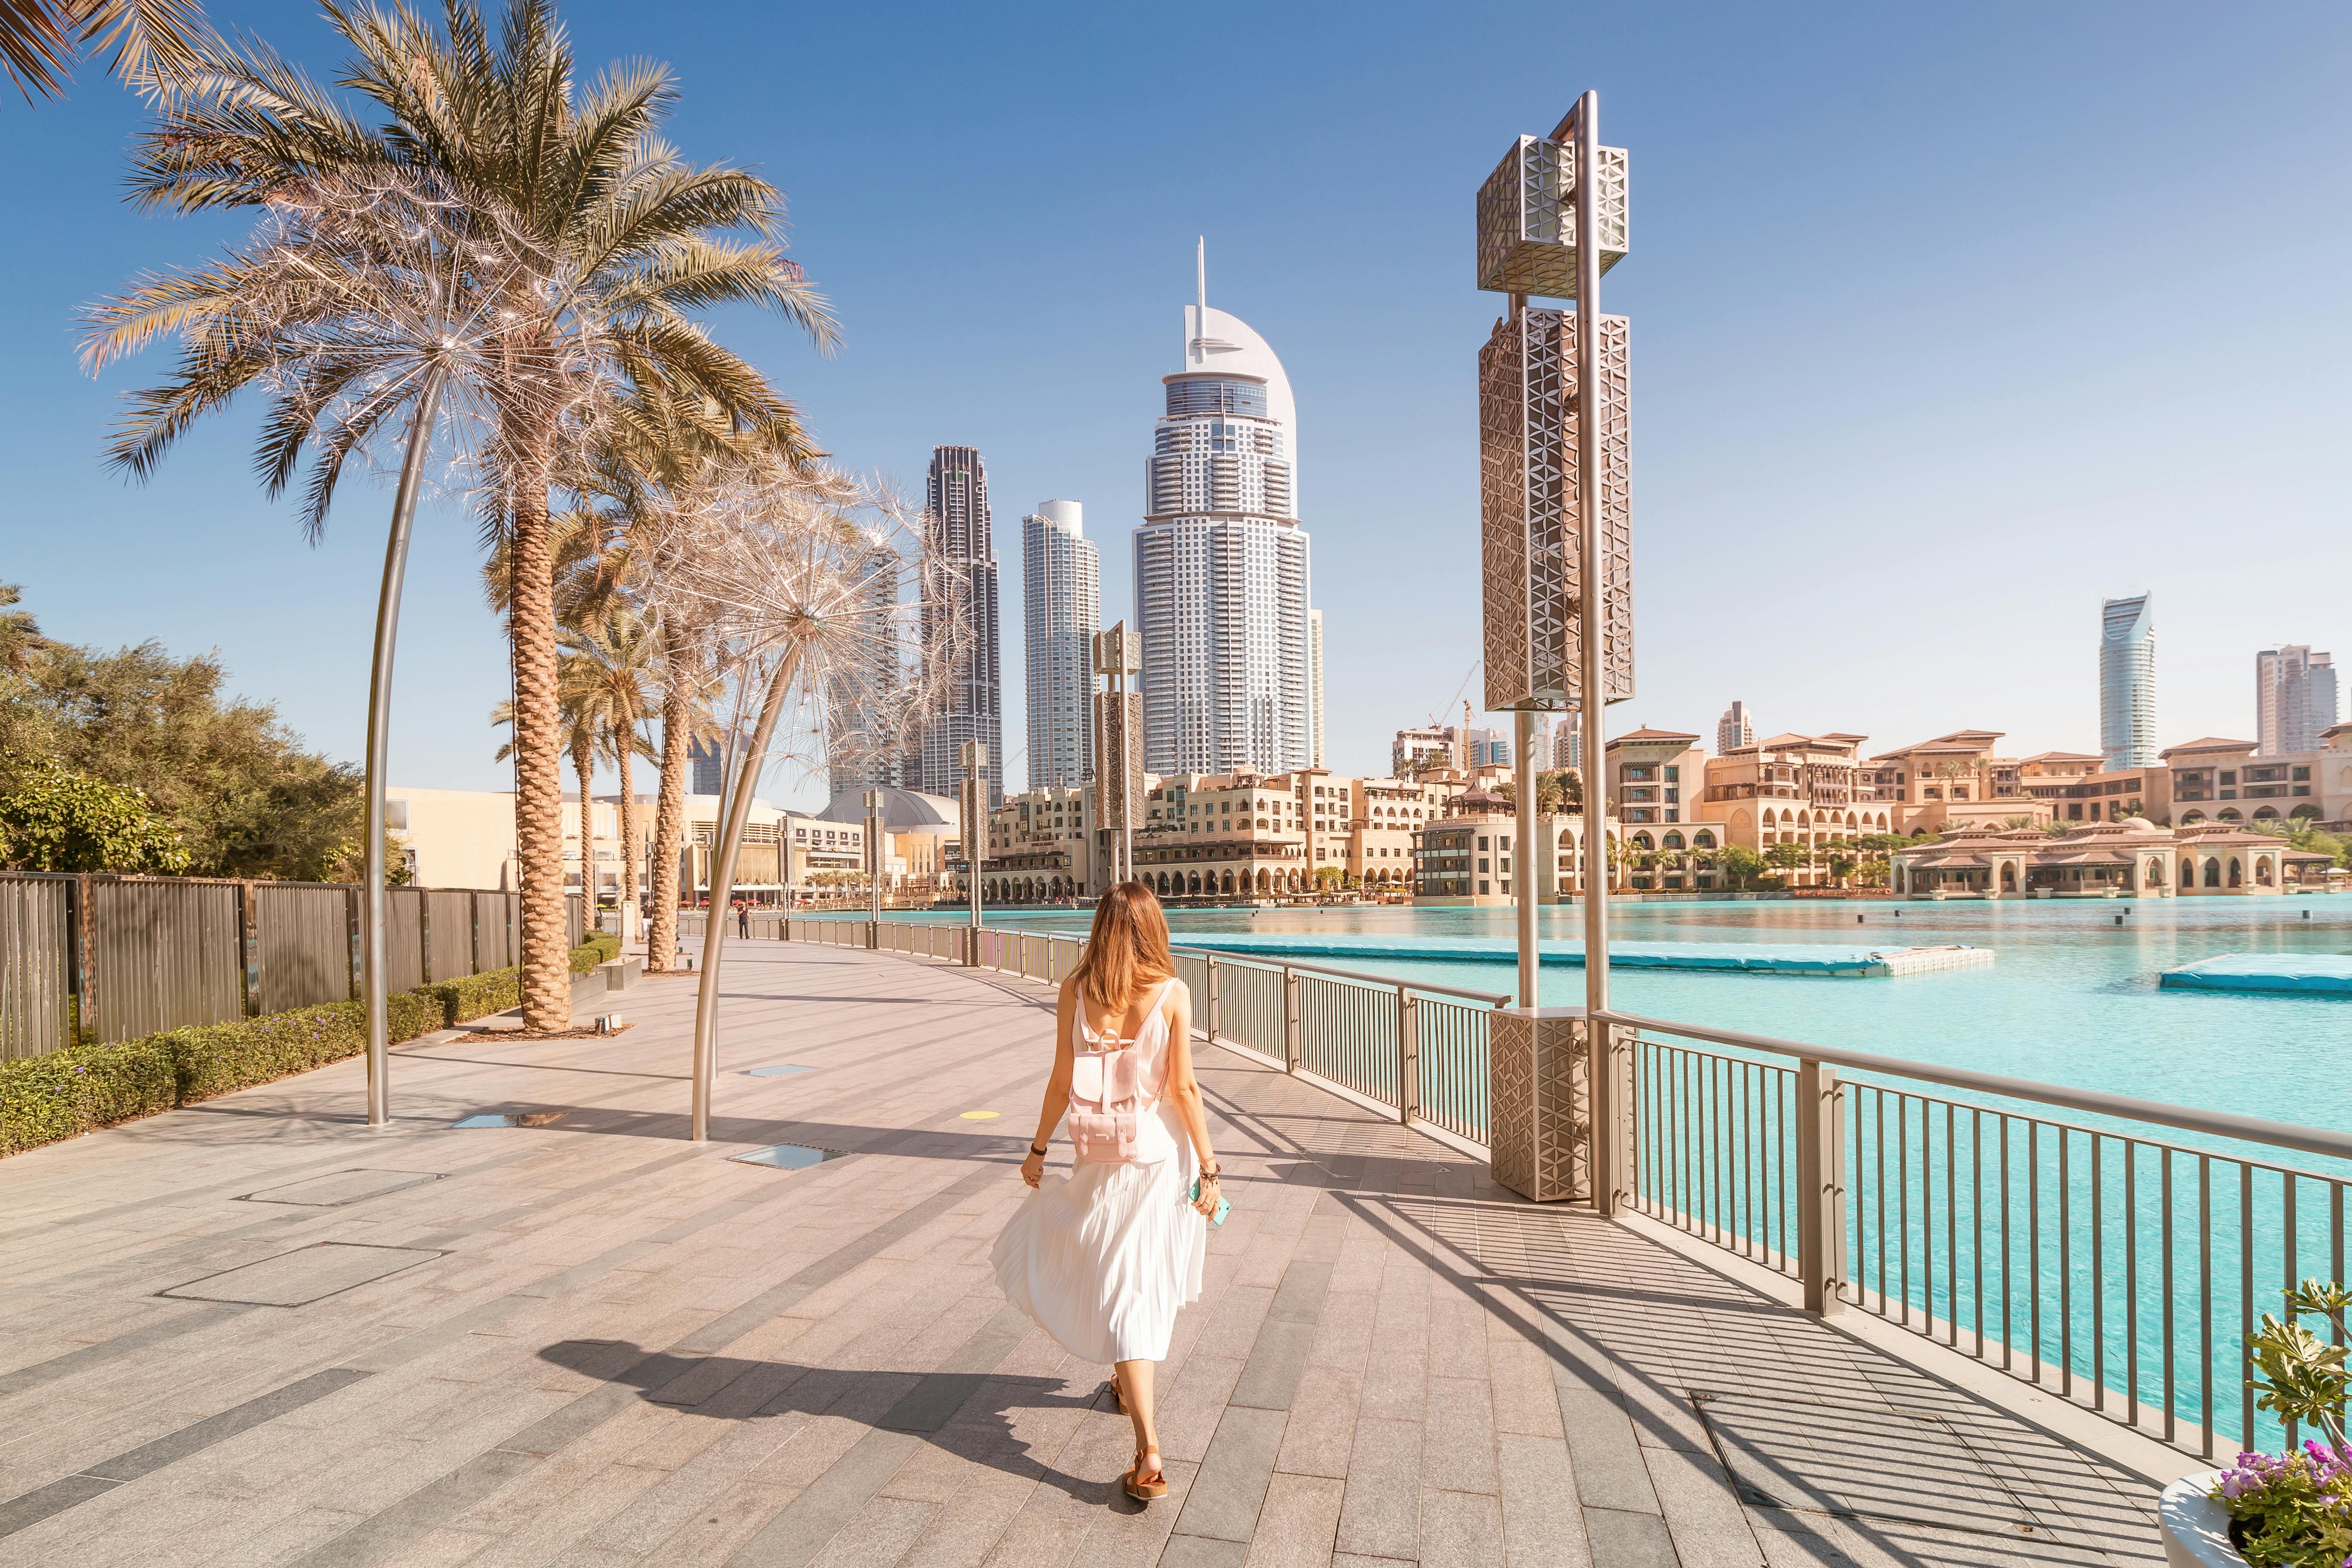 Mieten Sie einen privaten Reiseführer für einen Tagesausflug in Dubai